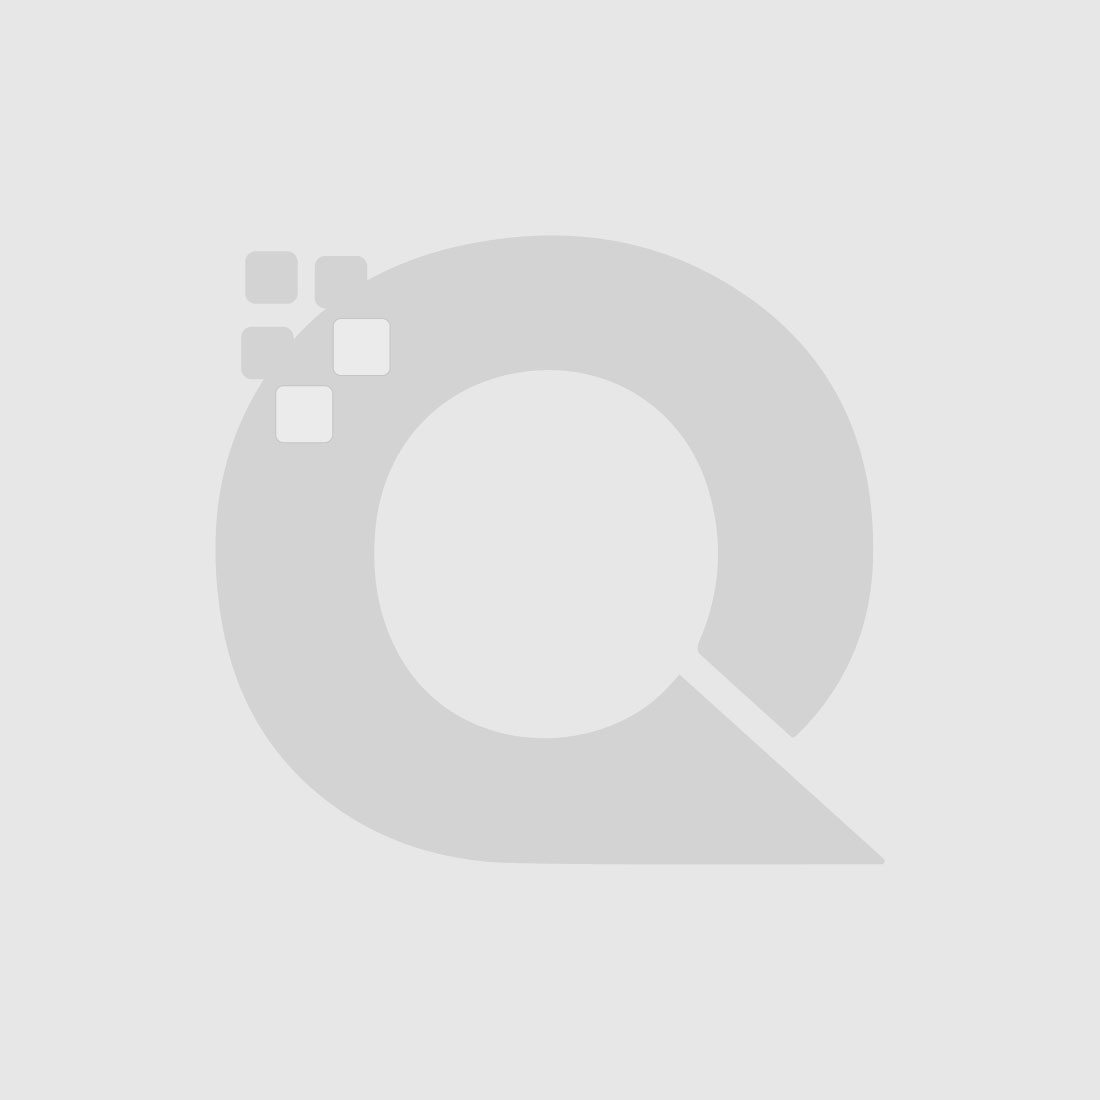 Guerniss Paris Velvet Matte Lipstick - GS013 - 3.5g